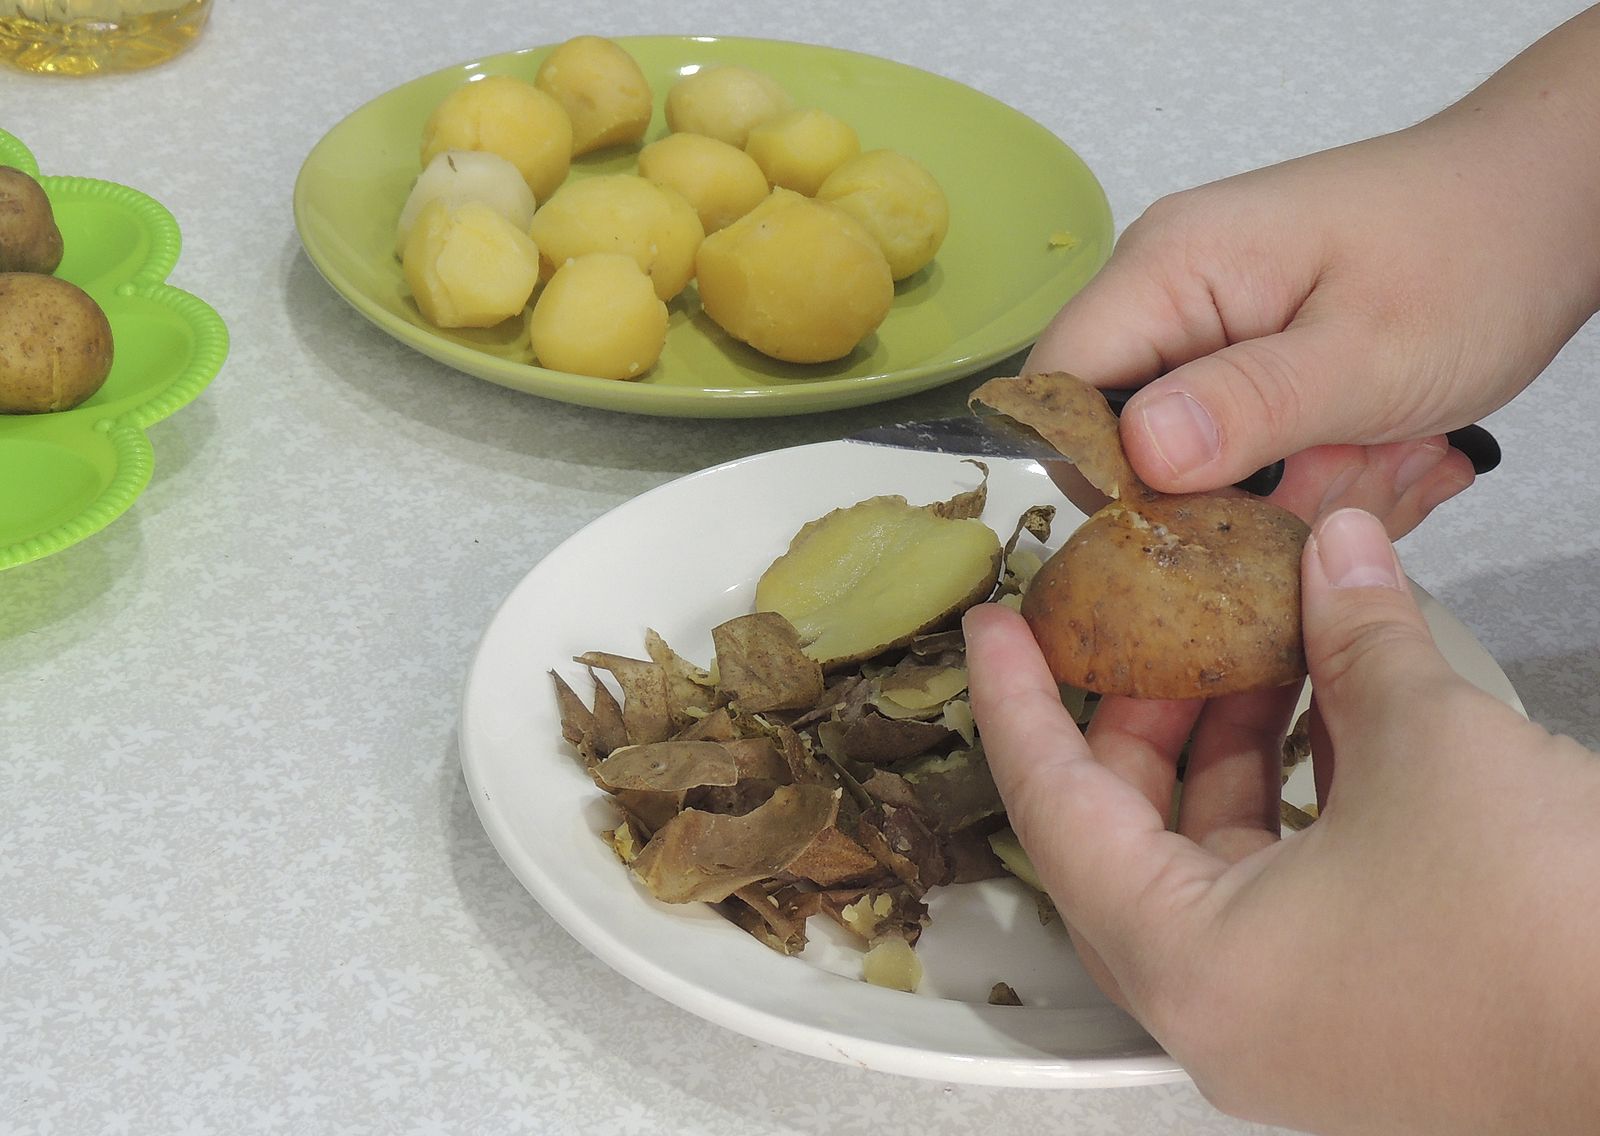 El truco para pelar patatas y huevos cocidos sin esfuerzo